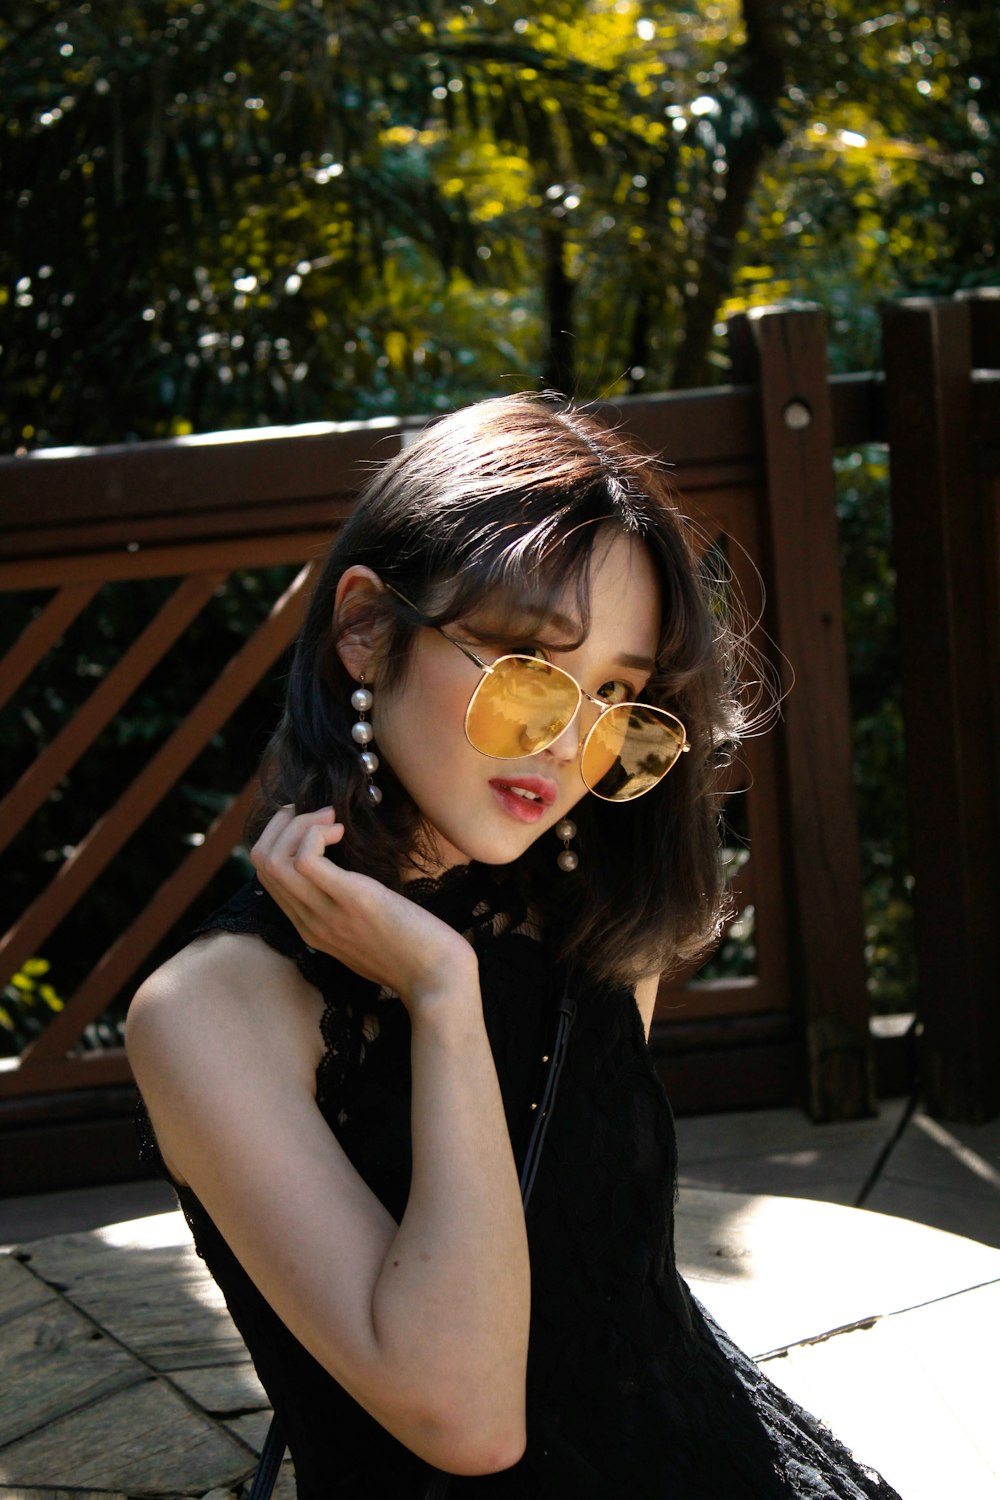 Girl Beautiful, Free Stock Photo, Profile of a beautiful Chinese girl